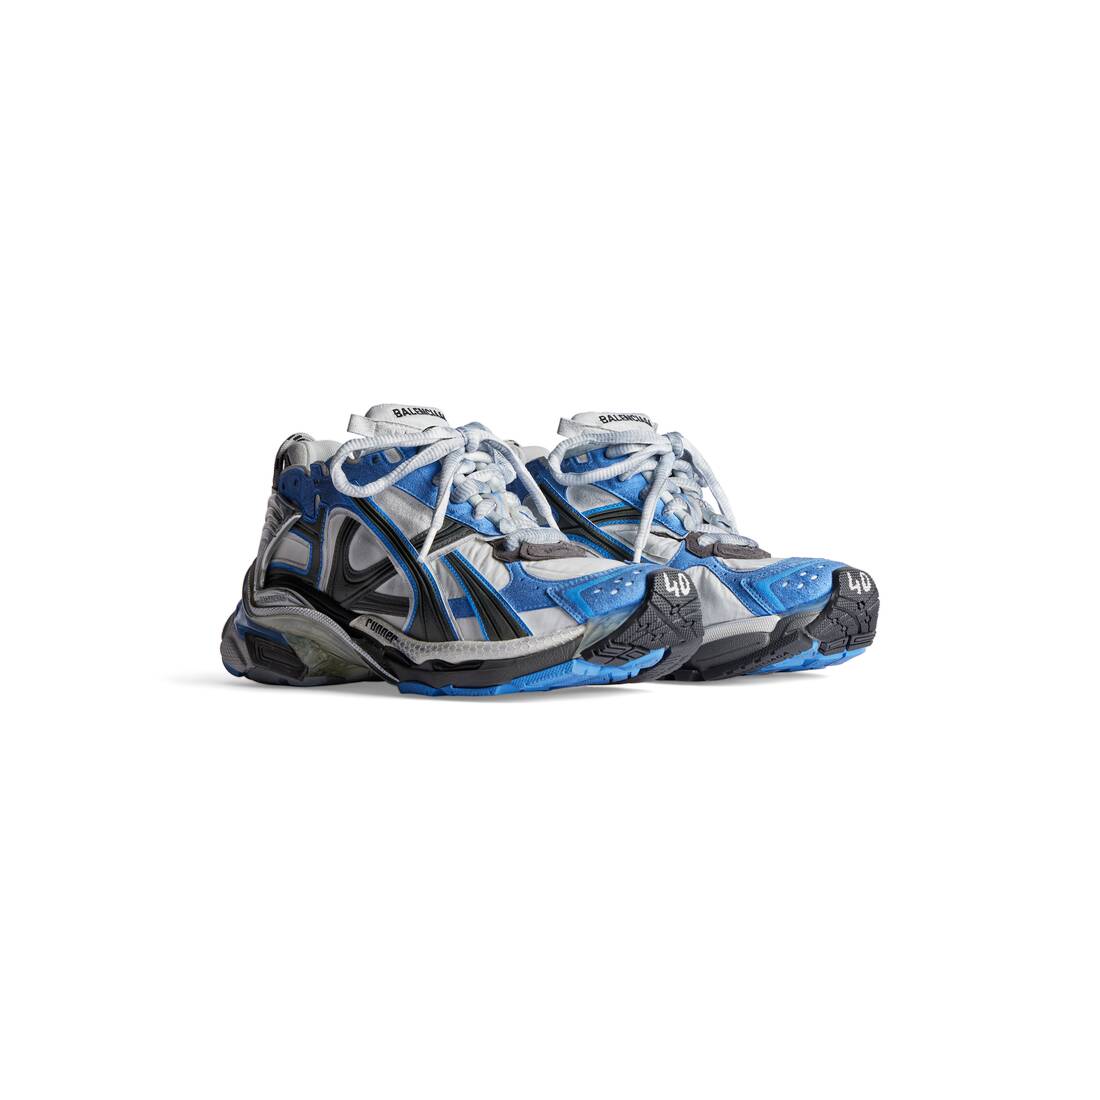 Men's Runner Sneaker in Blue/white/grey